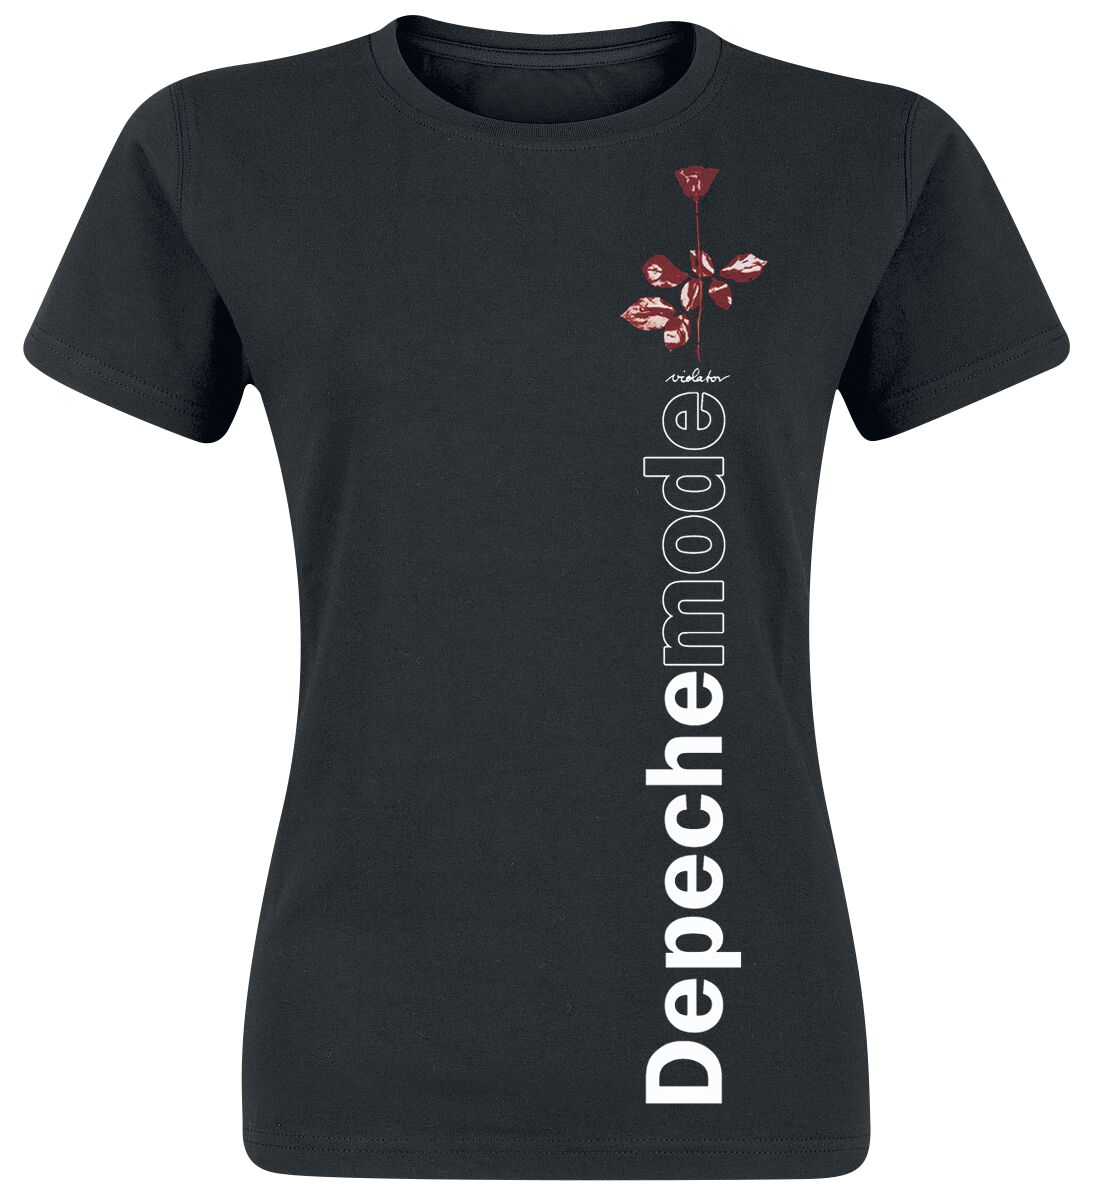 Depeche Mode T-Shirt - Violator Side Rose - S bis XXL - für Damen - Größe XXL - schwarz  - Lizenziertes Merchandise!